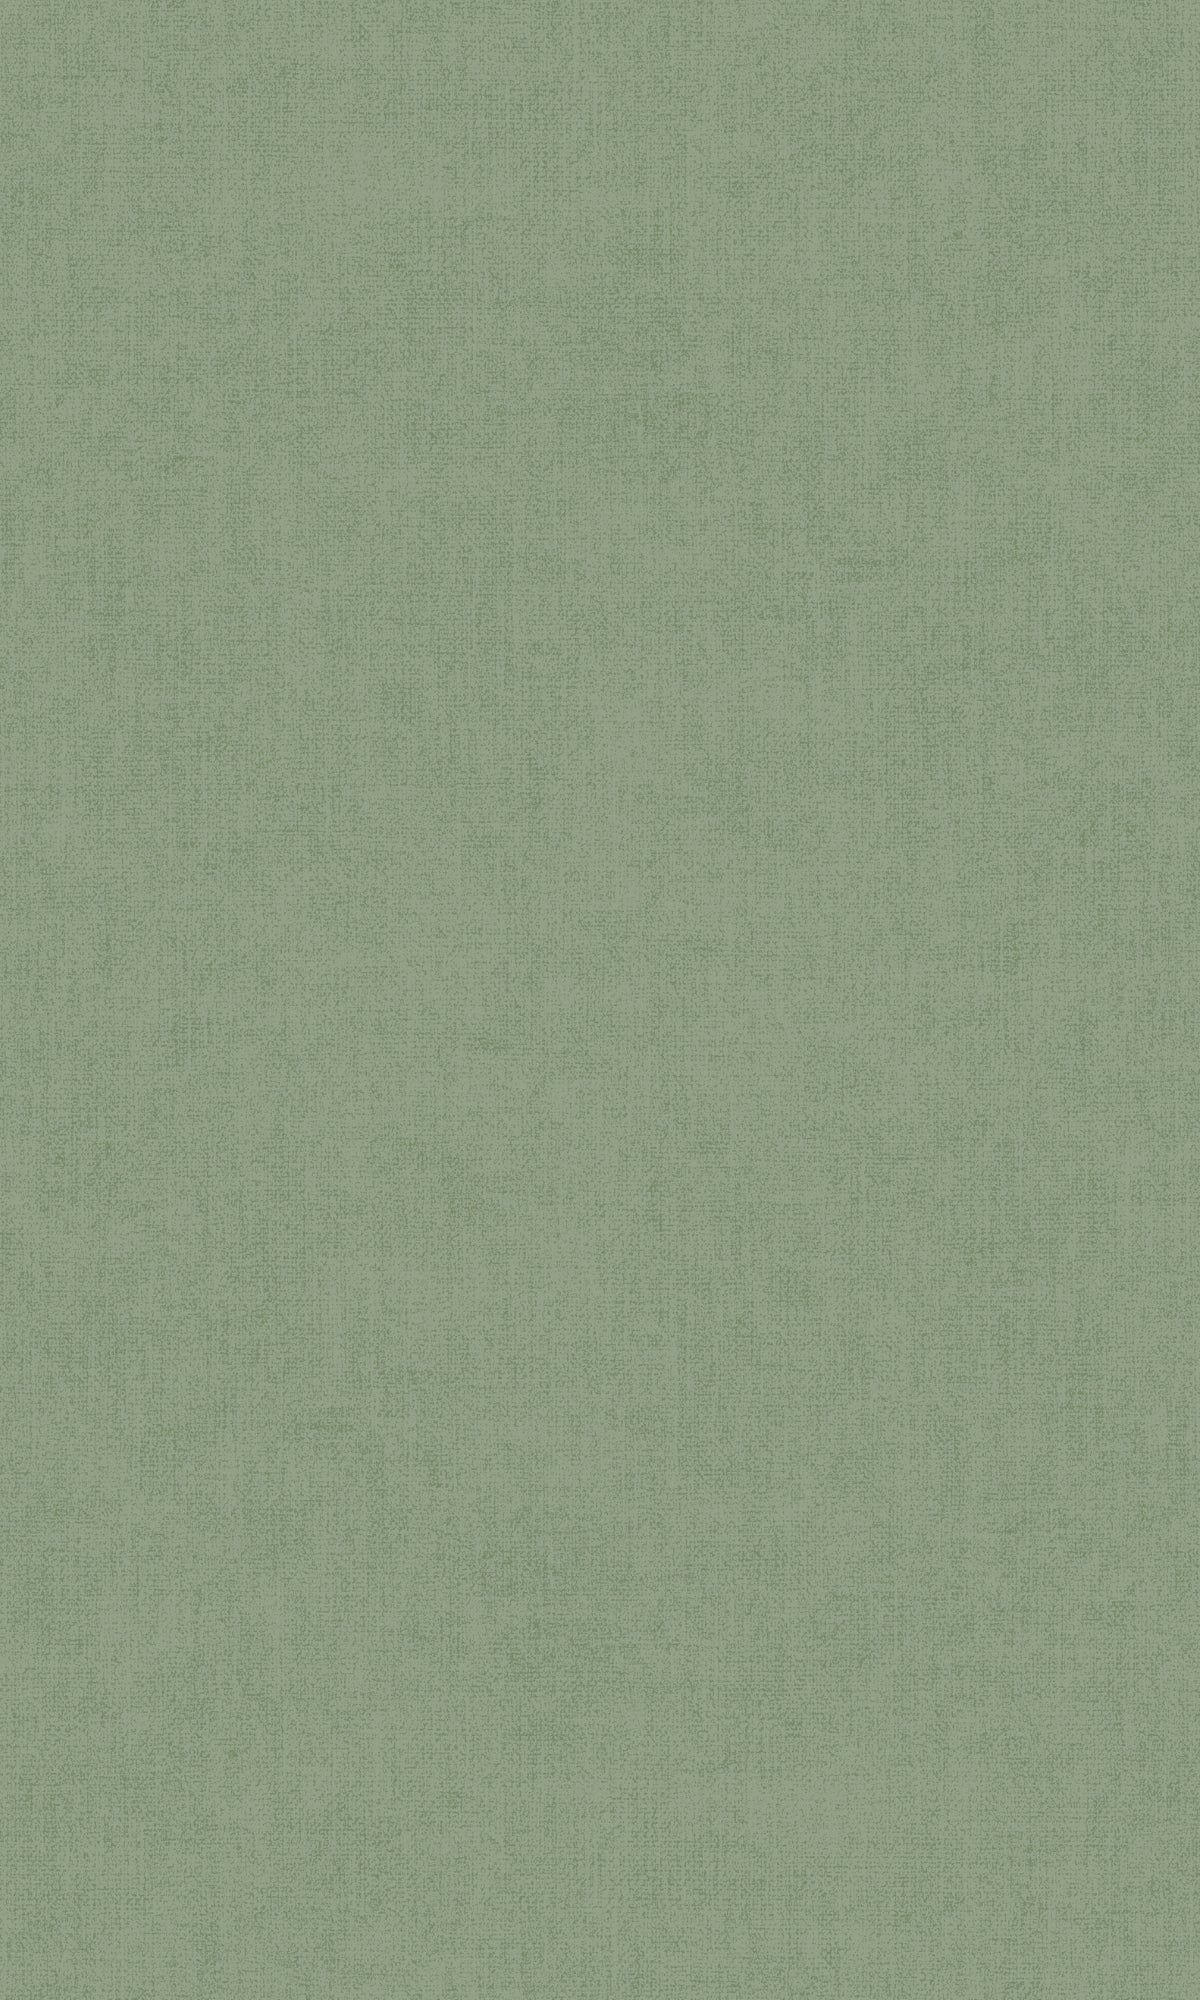 Moss Green Simple Plain Wallpaper R9310